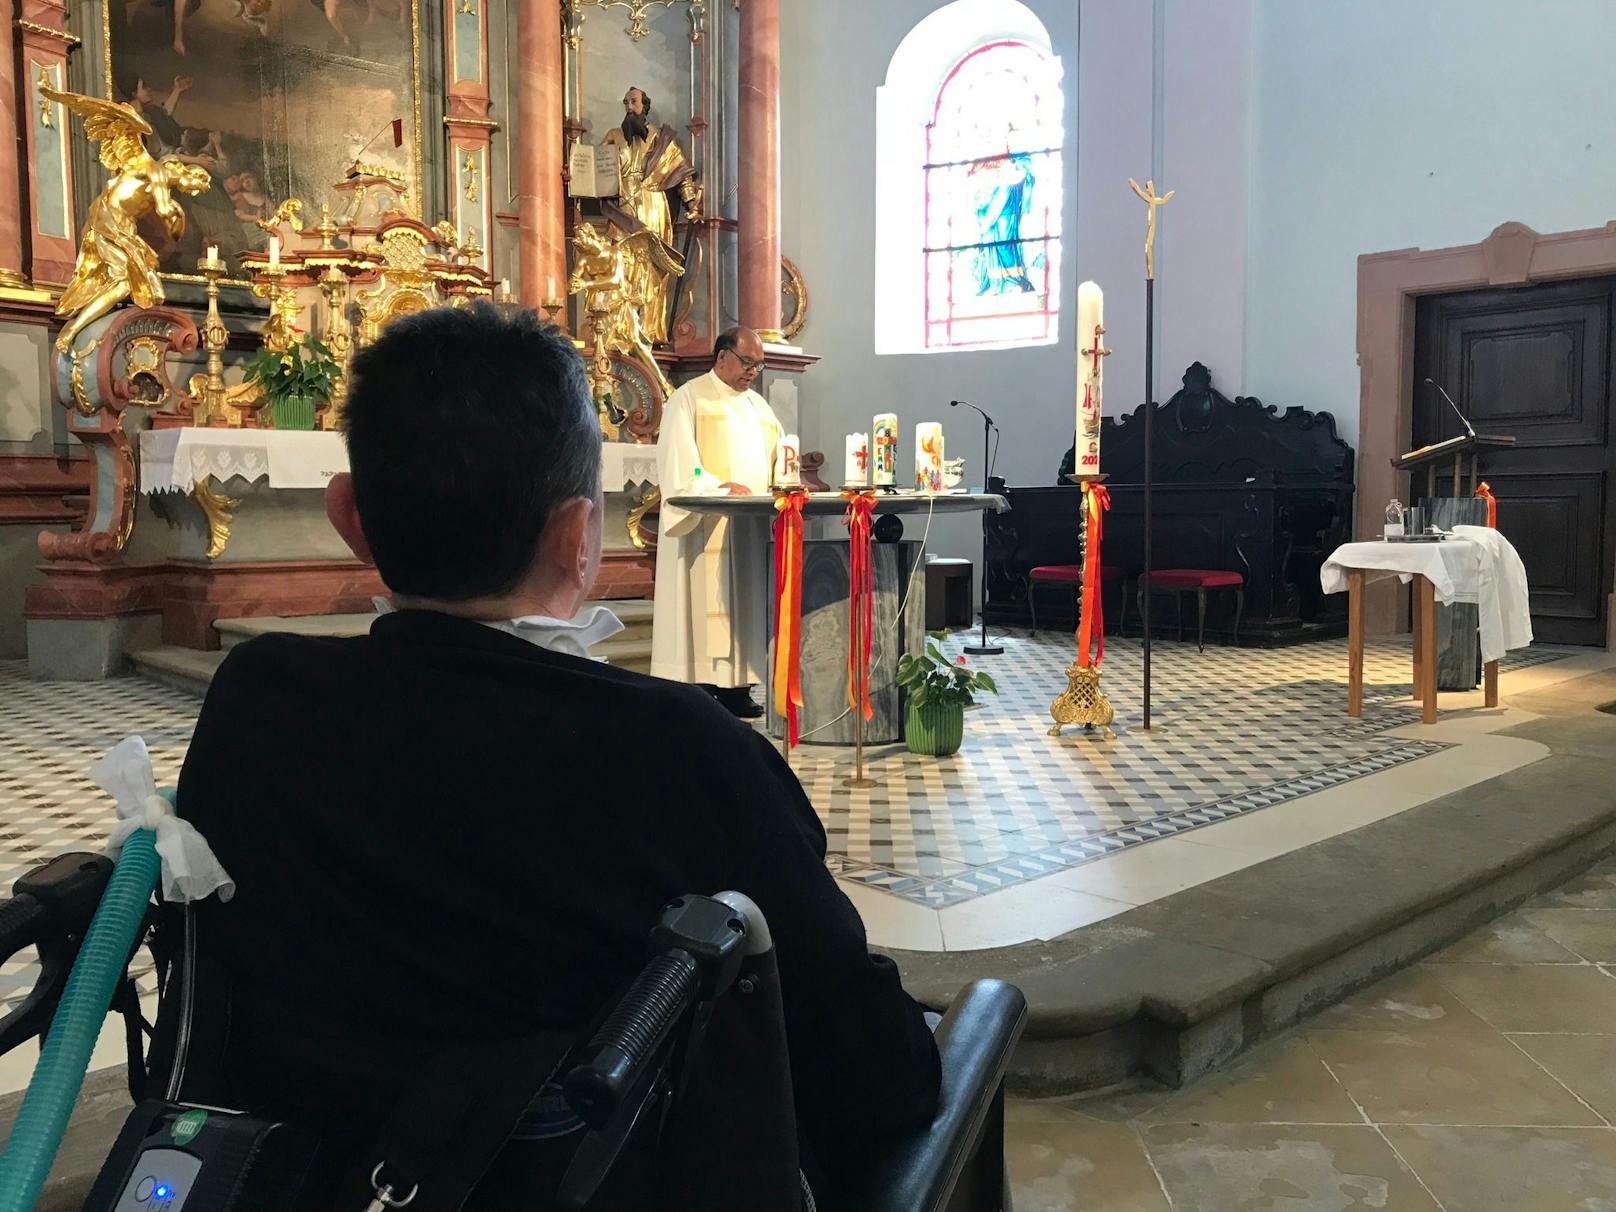 Gabriele saß mit ihrem Rollstuhl bei der Taufe in der ersten Reihe.